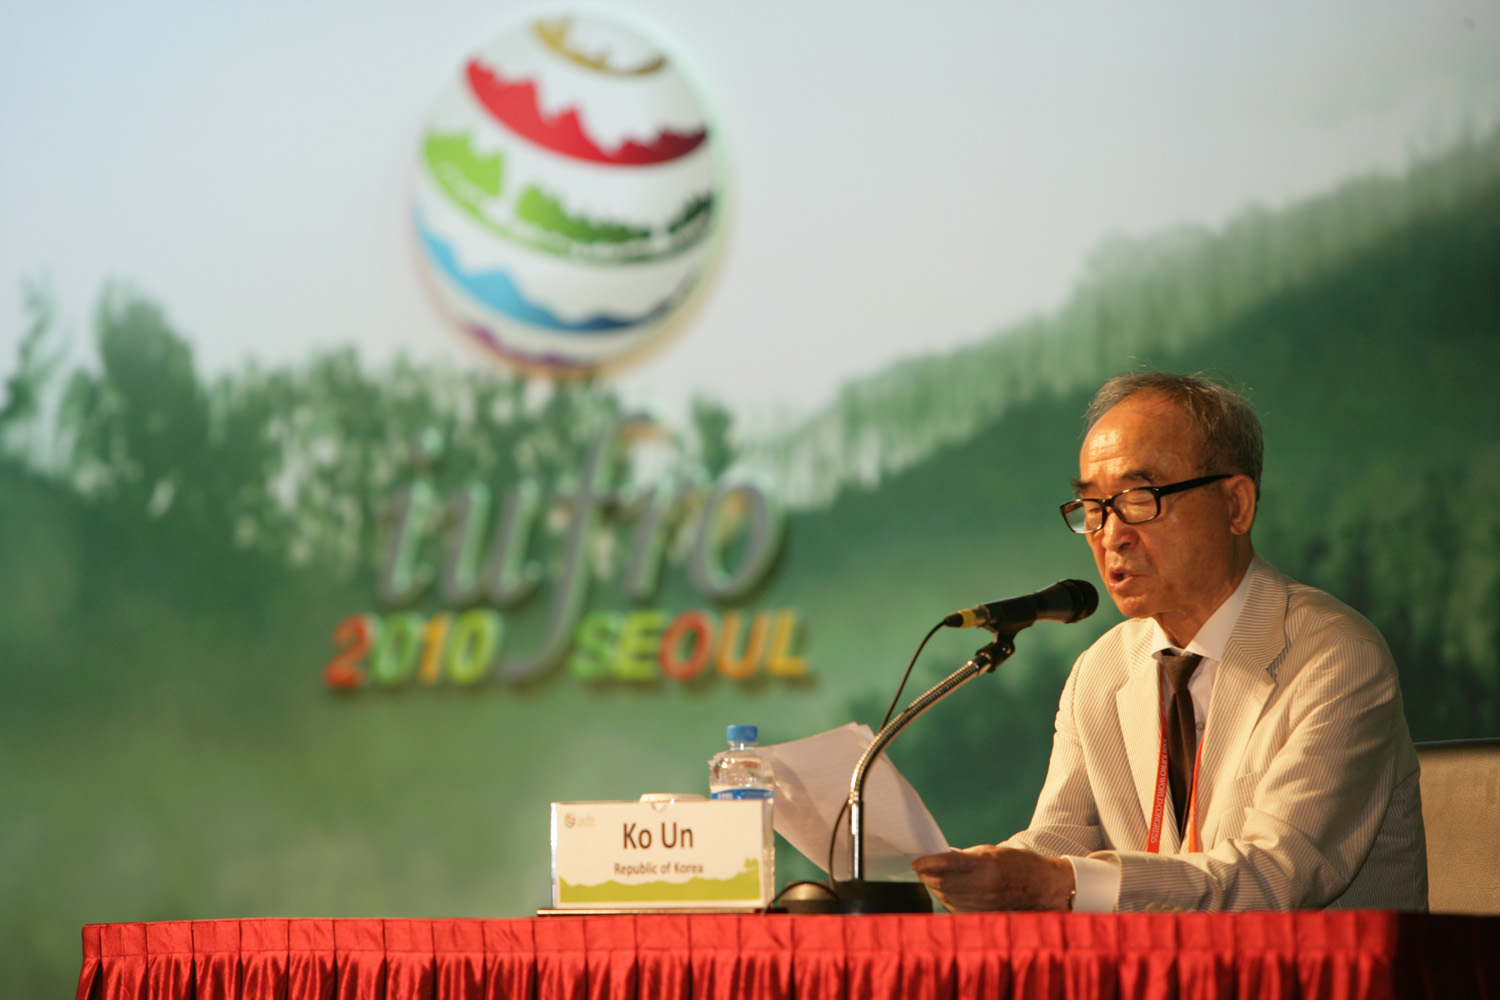 Poet Ko Un delivering his speech, 'Forest Is Short; Desert Is Long'